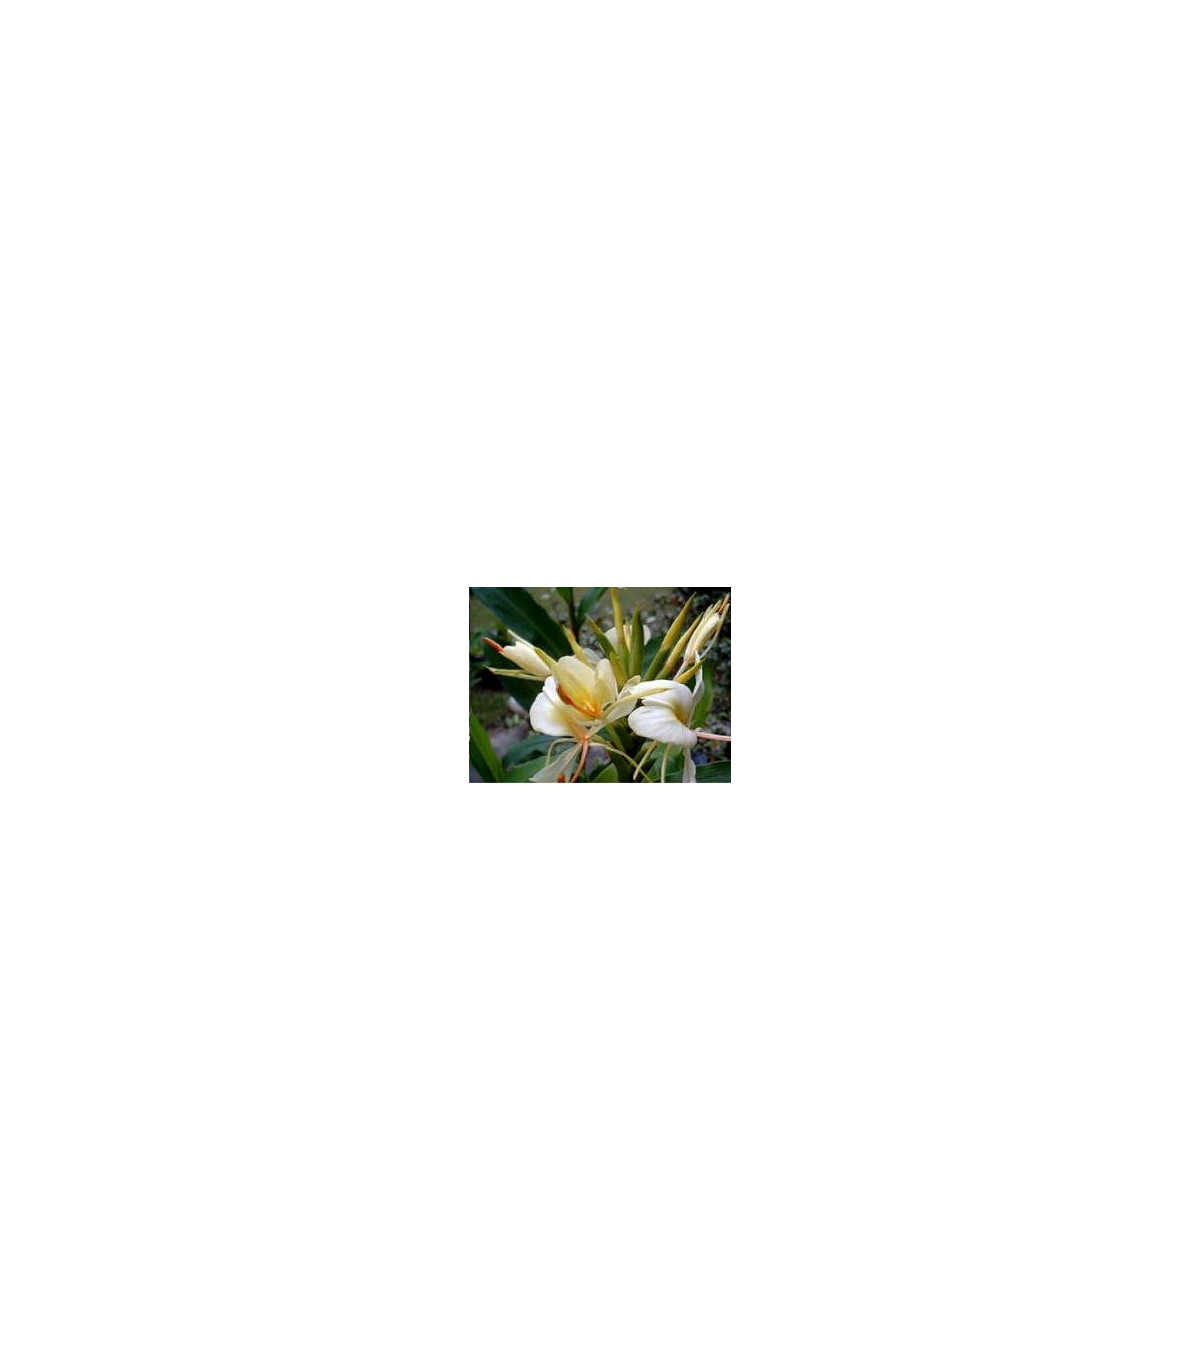 Okrasný zázvor - Hedychium - semená zázvoru - 2 ks